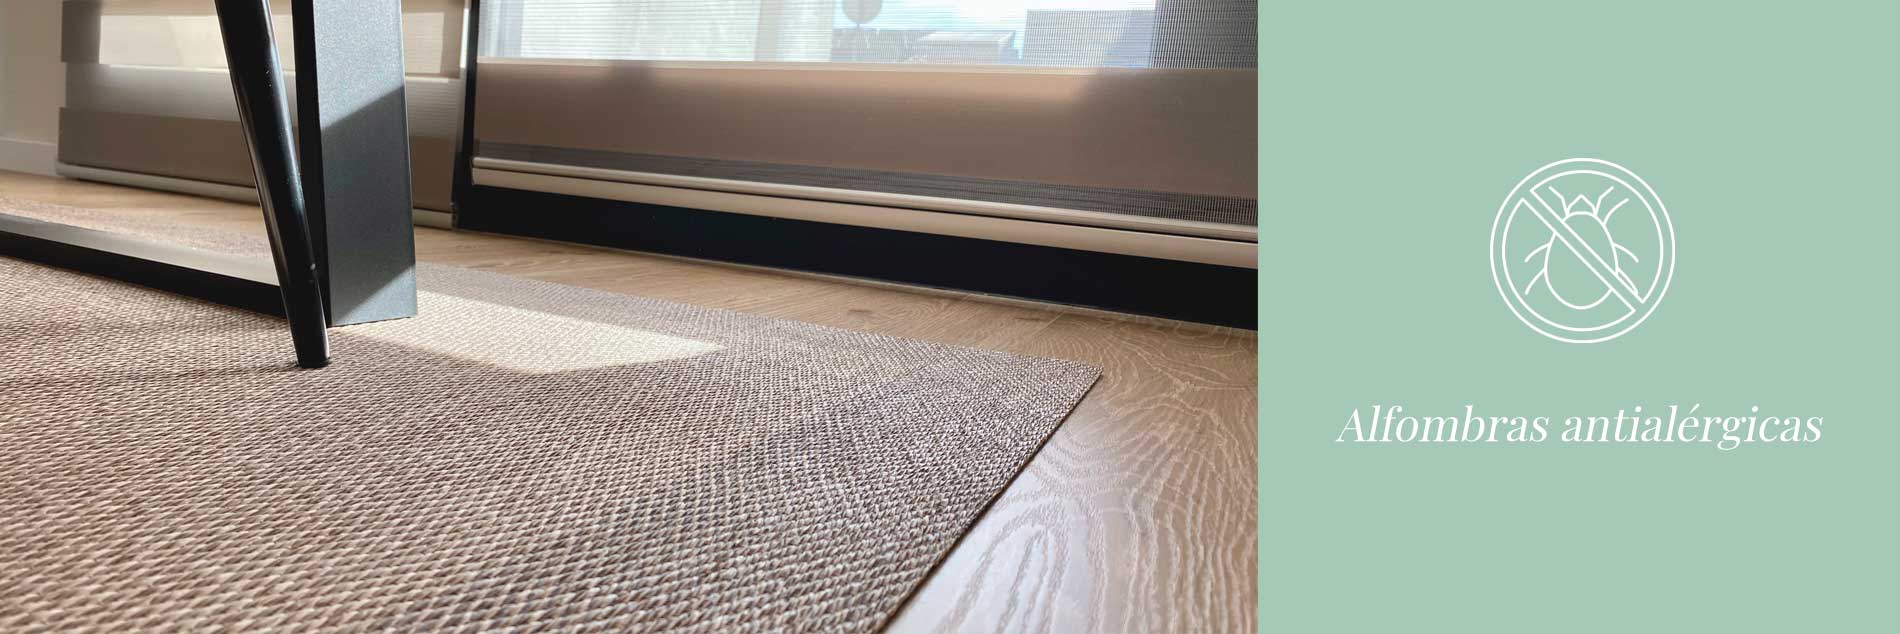 Alfombras antialergicas, alfombras sin alergias, alfombras sin acaros